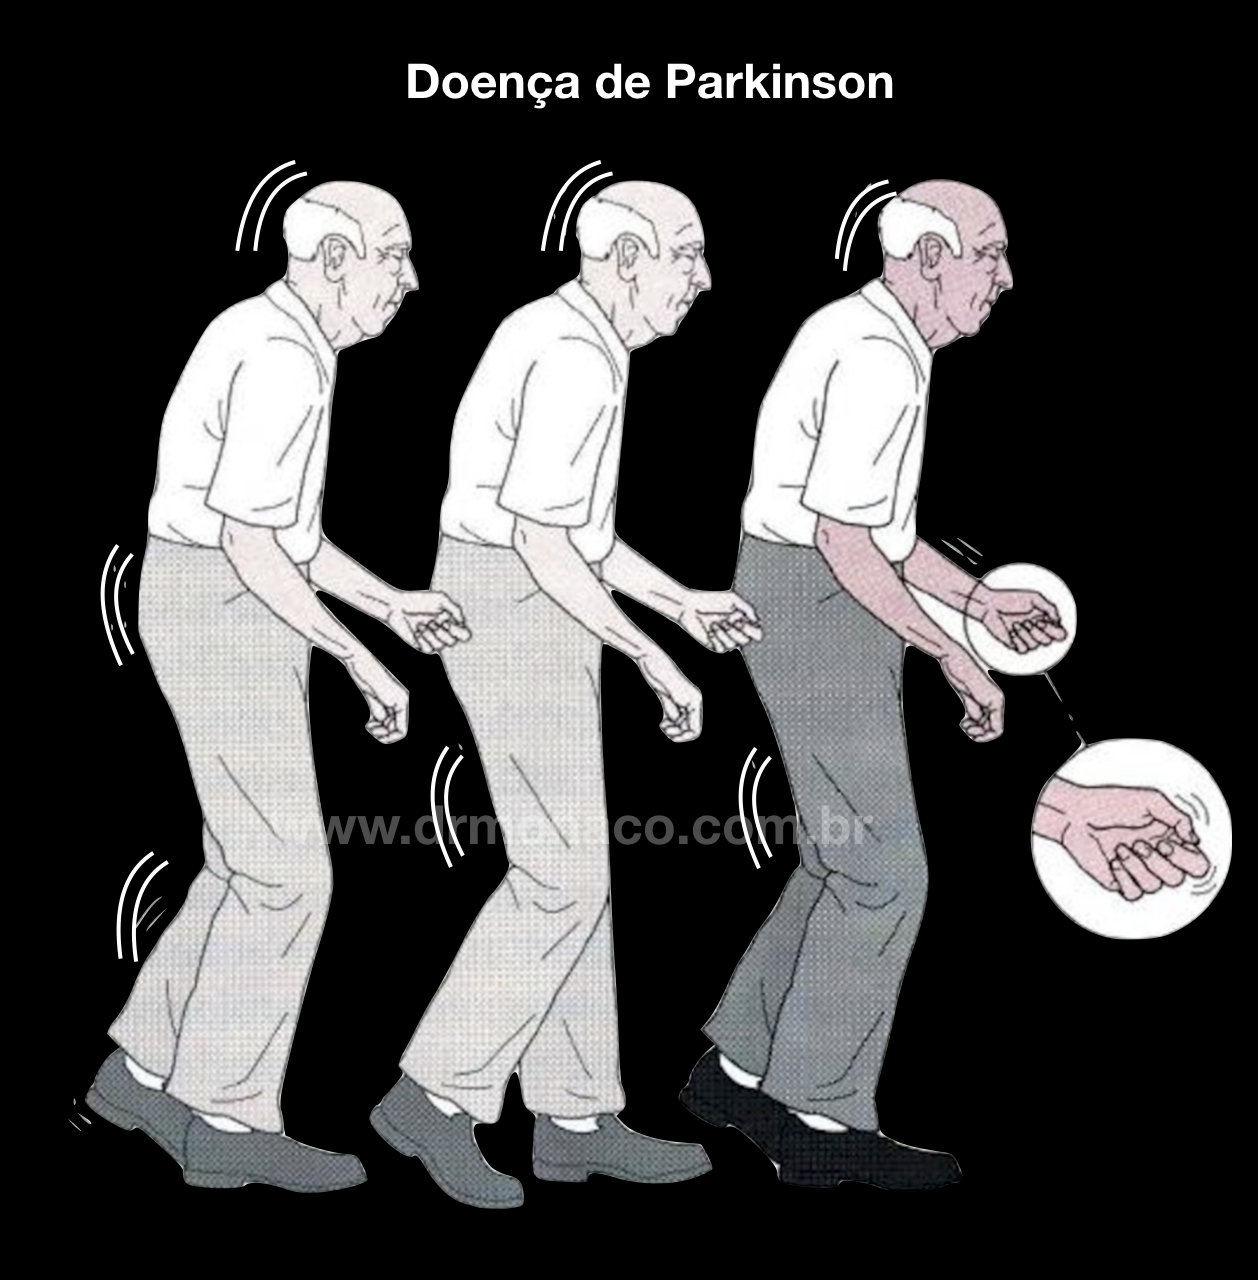 doença de Parkinson; tremor; rigidez; estimulação cerebral profunda; cirurgia para Parkinson